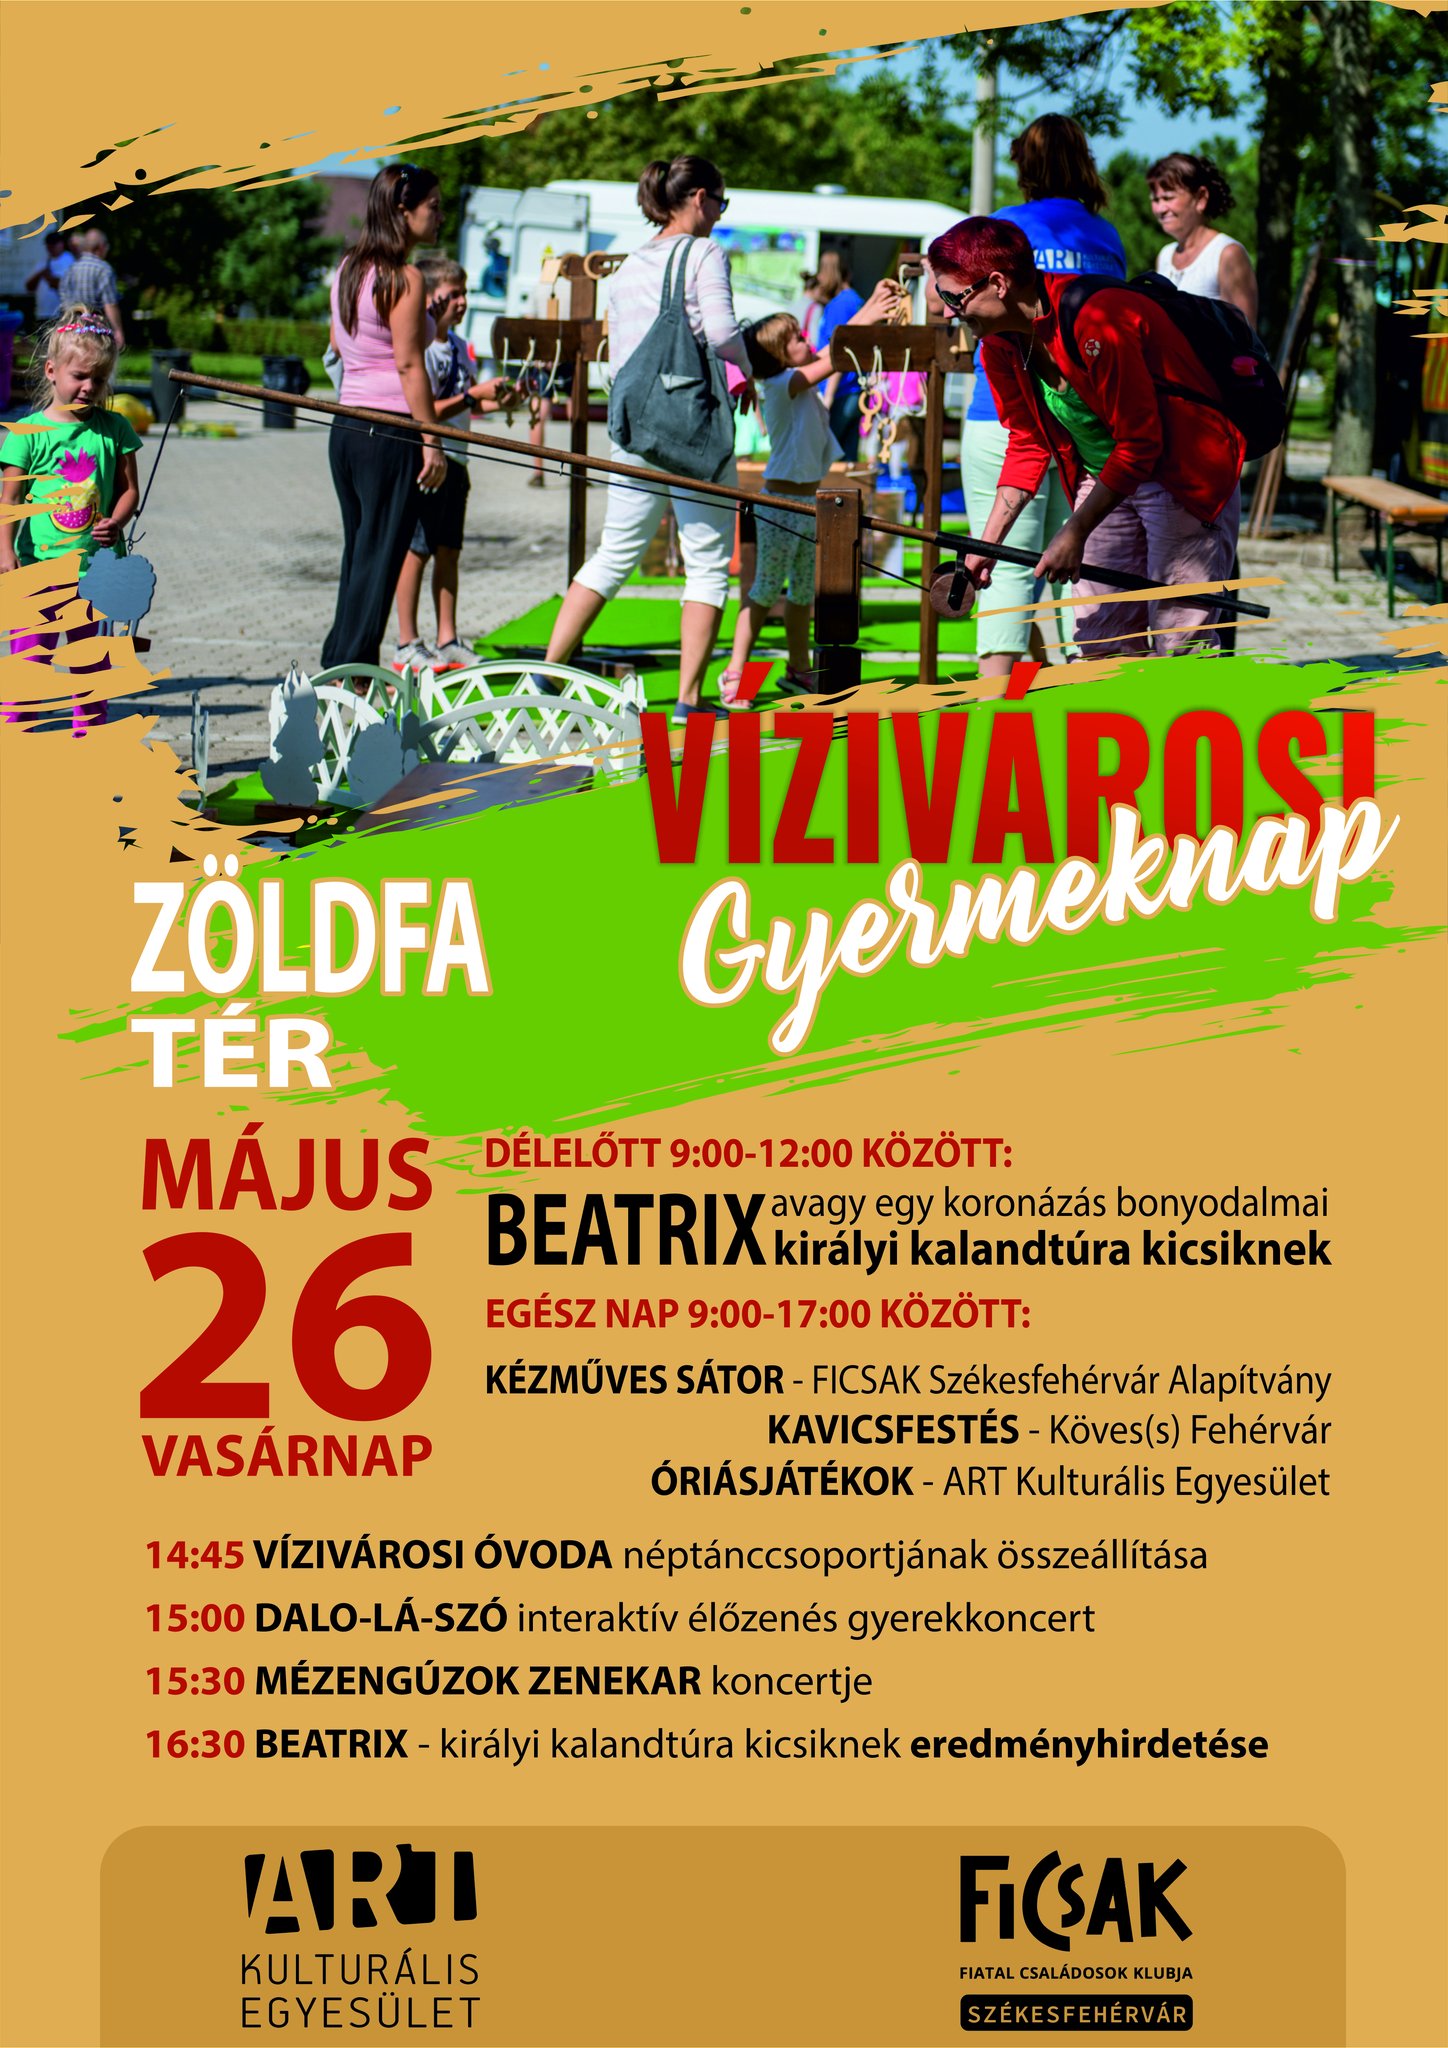 Koncert és kalandtúra - Vízivárosi gyermeknap lesz vasárnap a Zöldfa téren